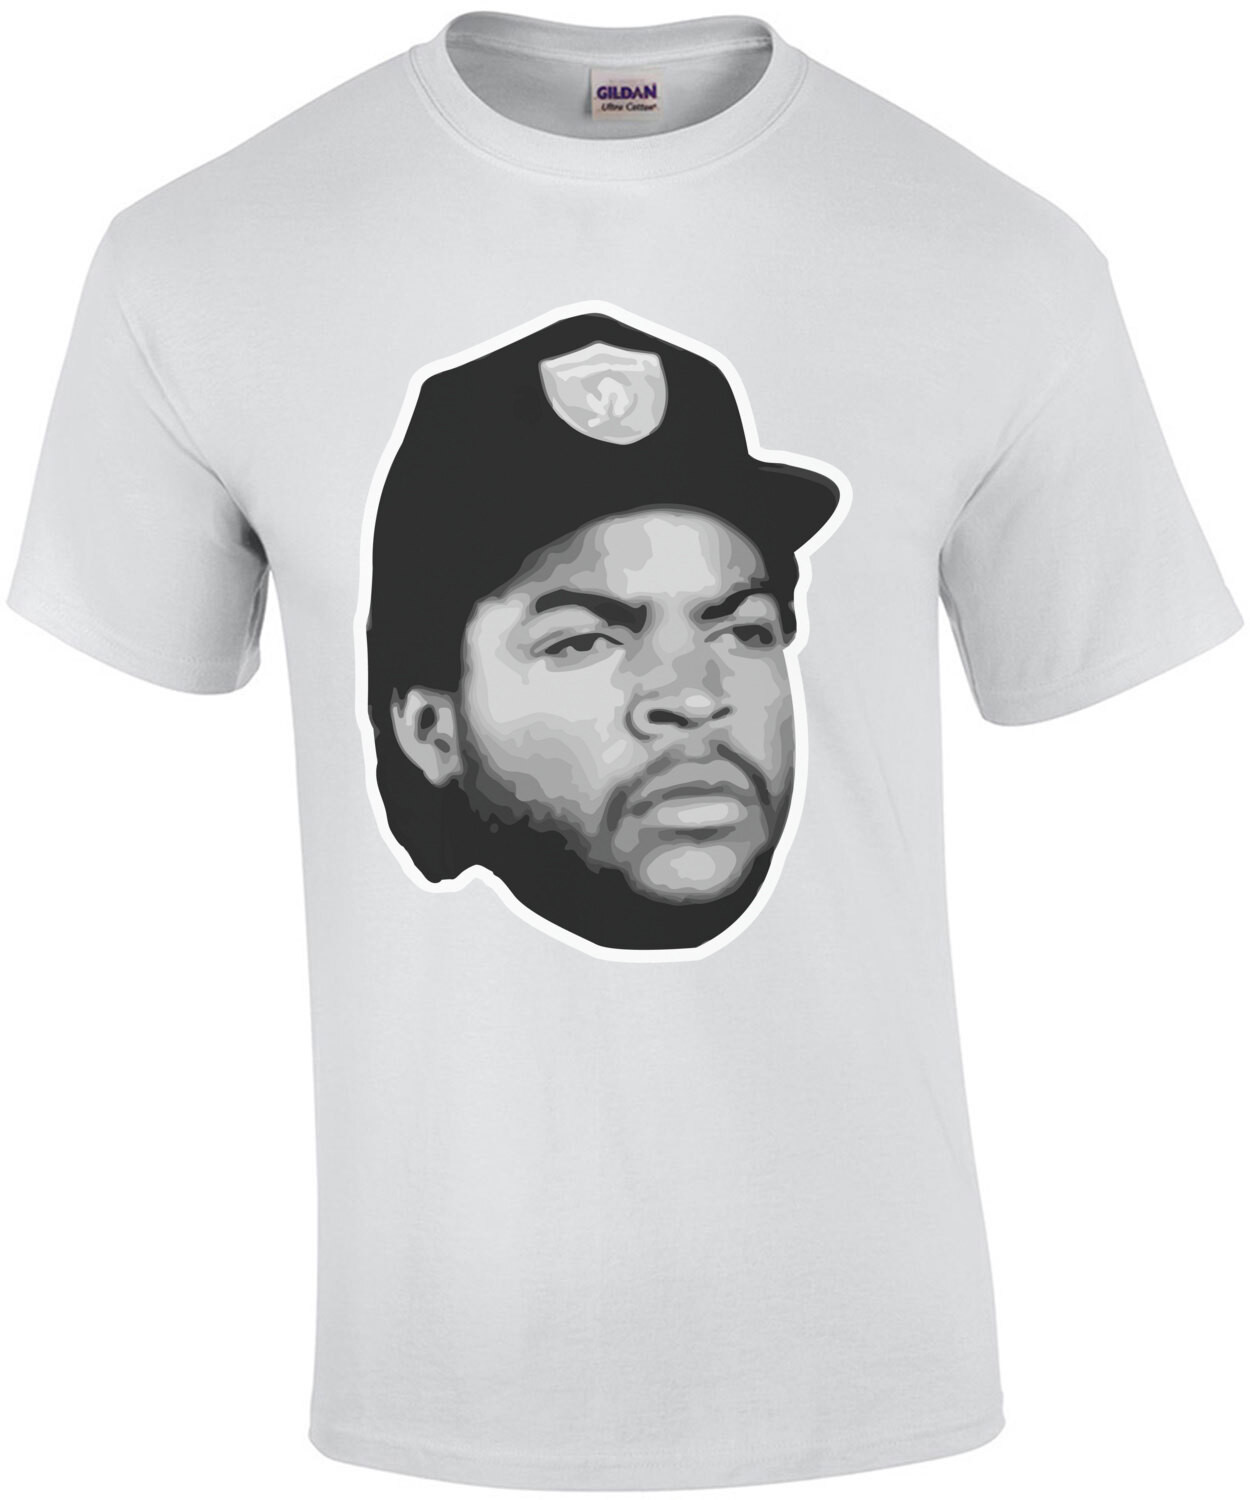 Boyz n the Hood - Doughboy - Ice Cube - 90's T-Shirt